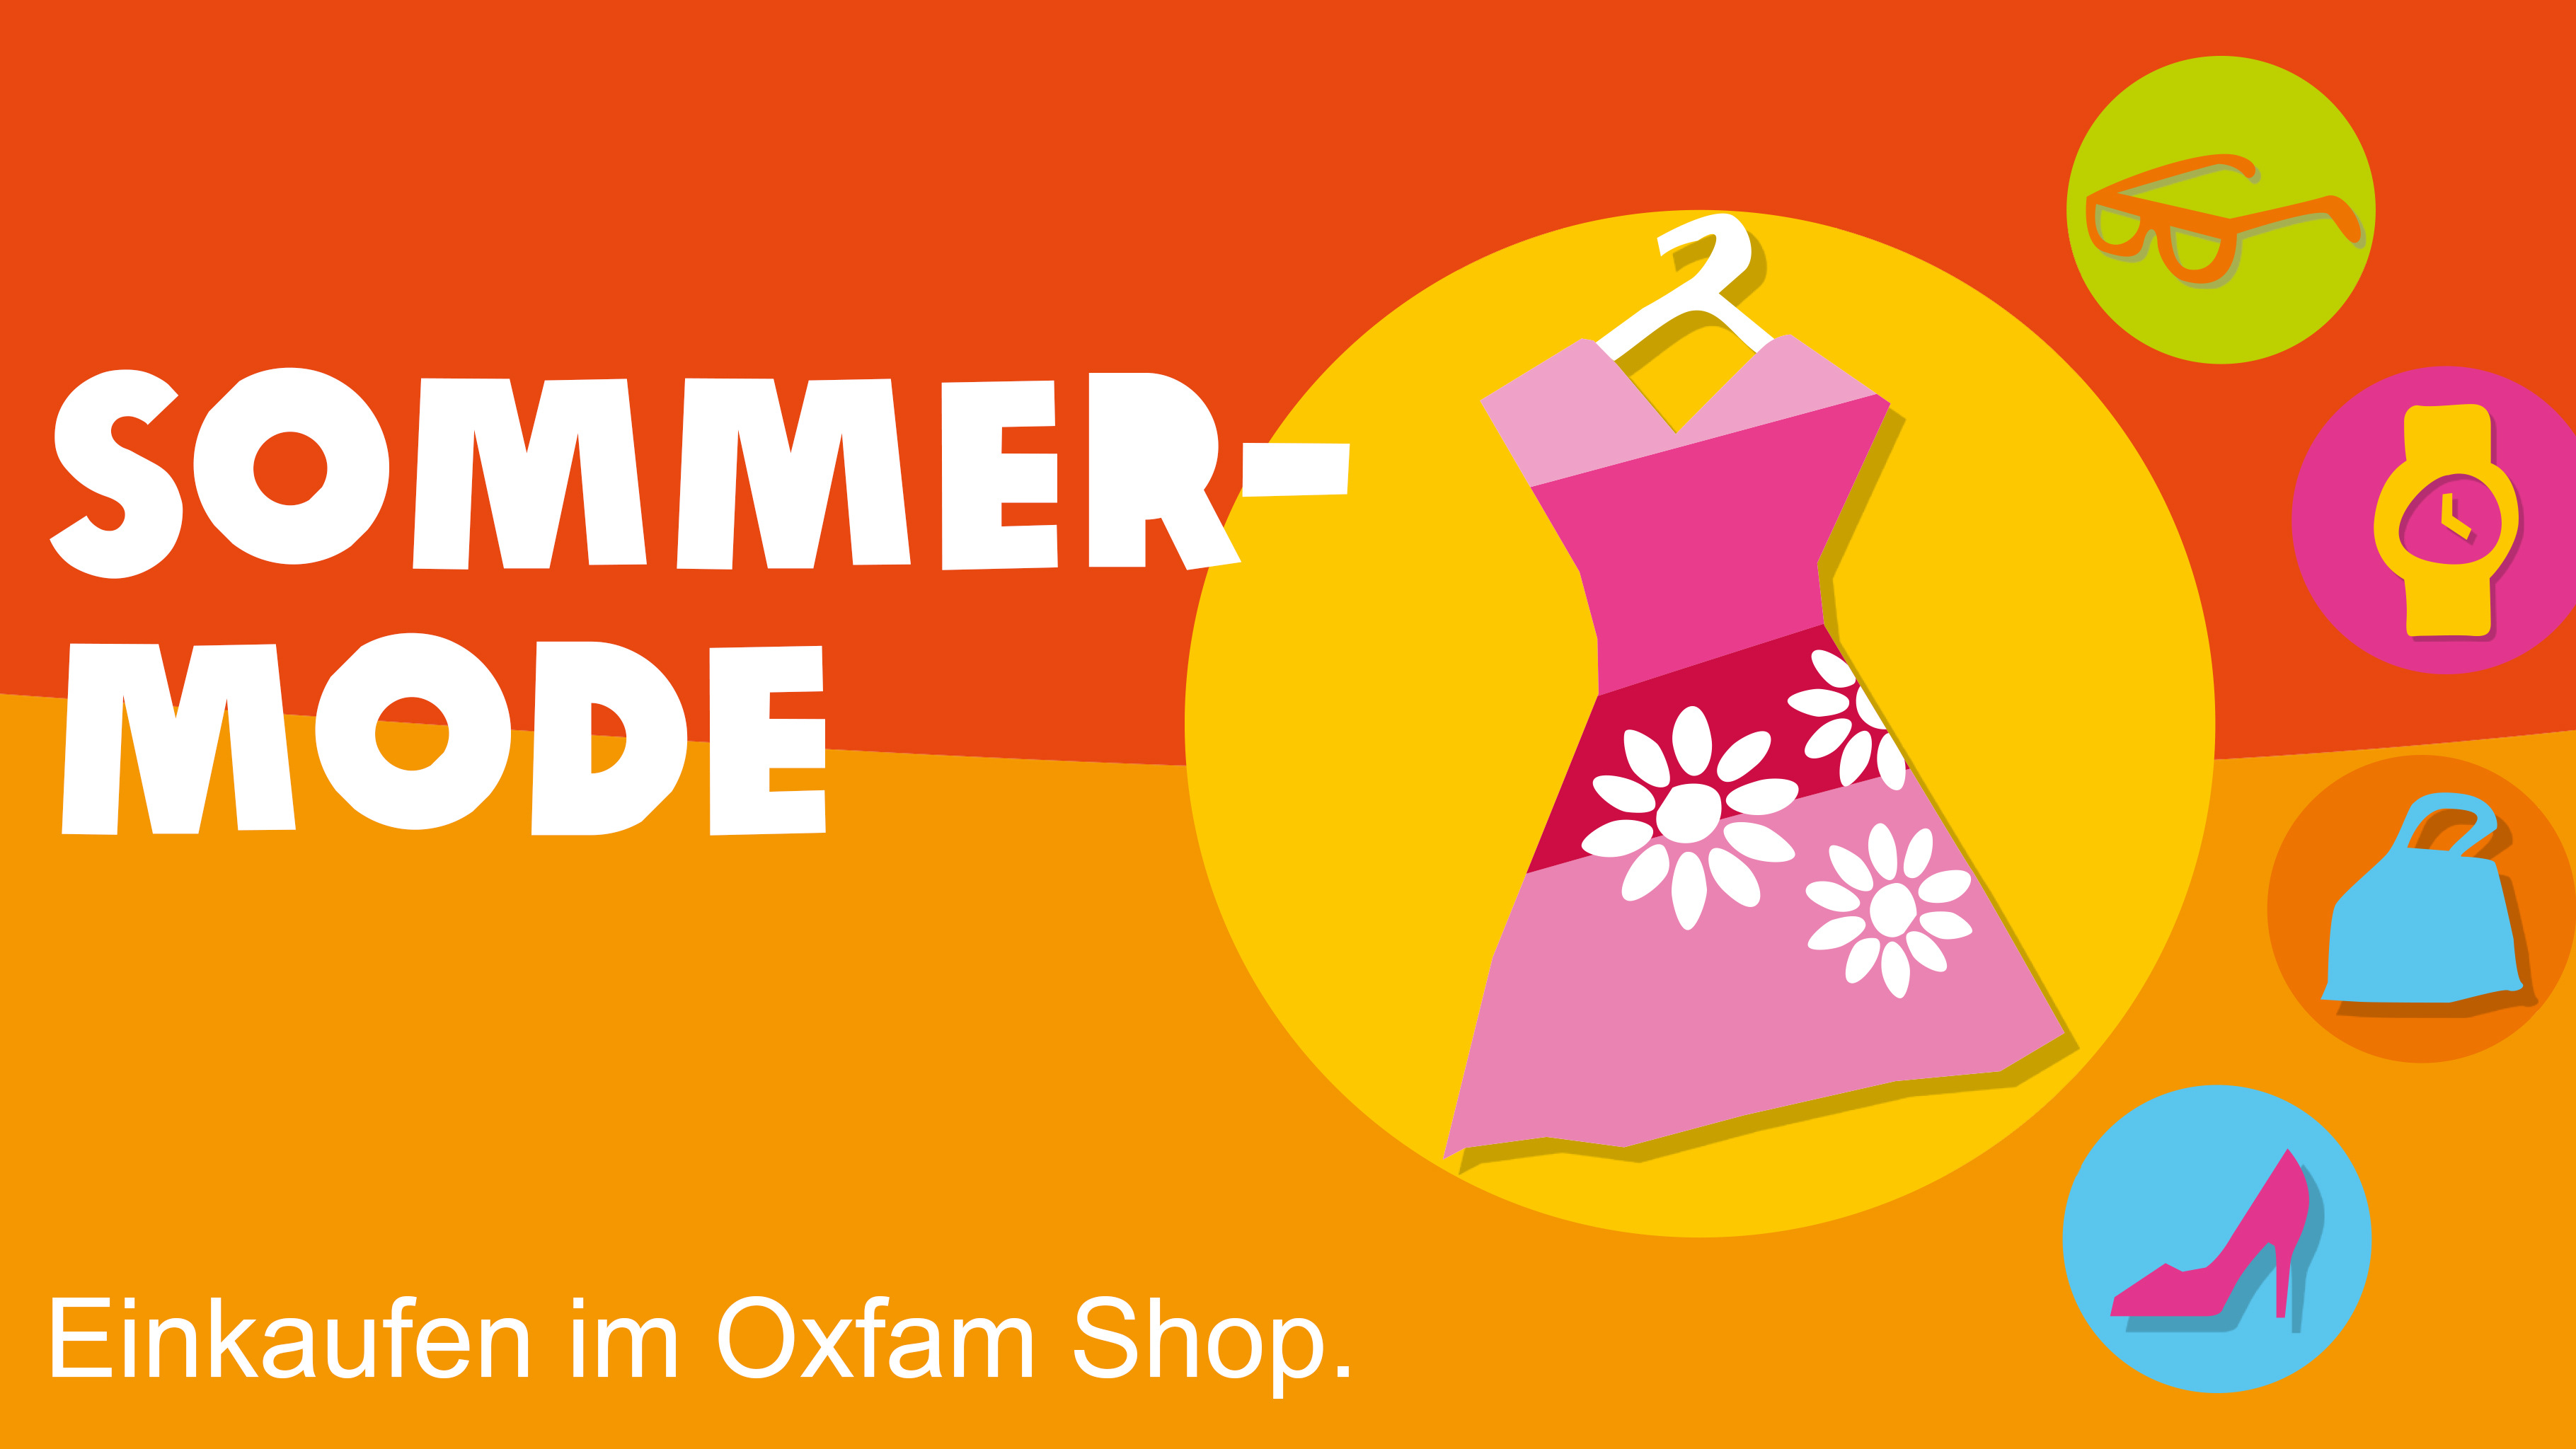 Sommermode gibt es im Oxfam Shop